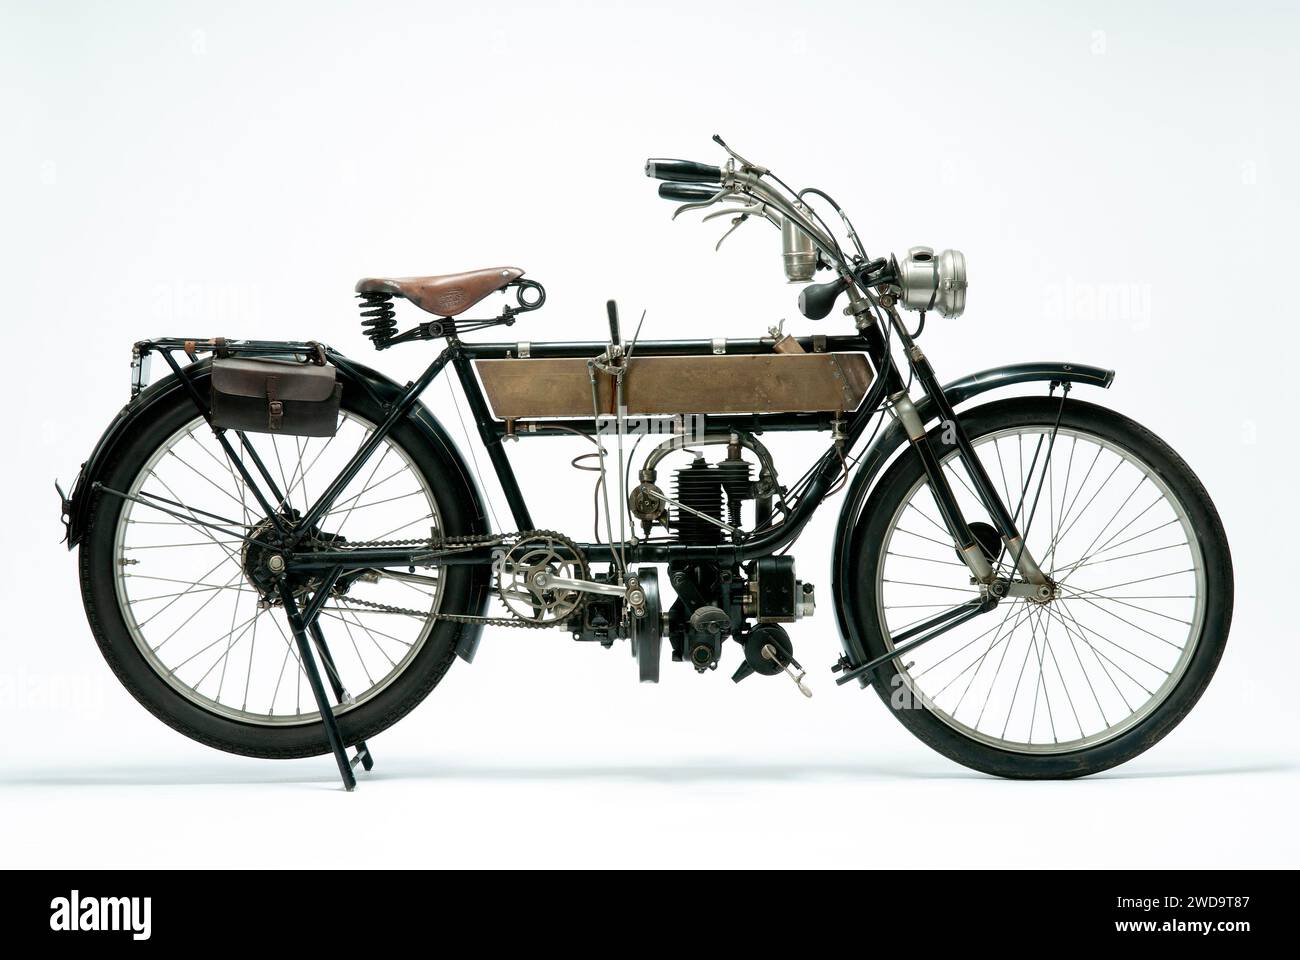 1913 FN modello 285 motocicletta veterana. Immagine Studio su sfondo bianco. Vista laterale destra. Foto Stock